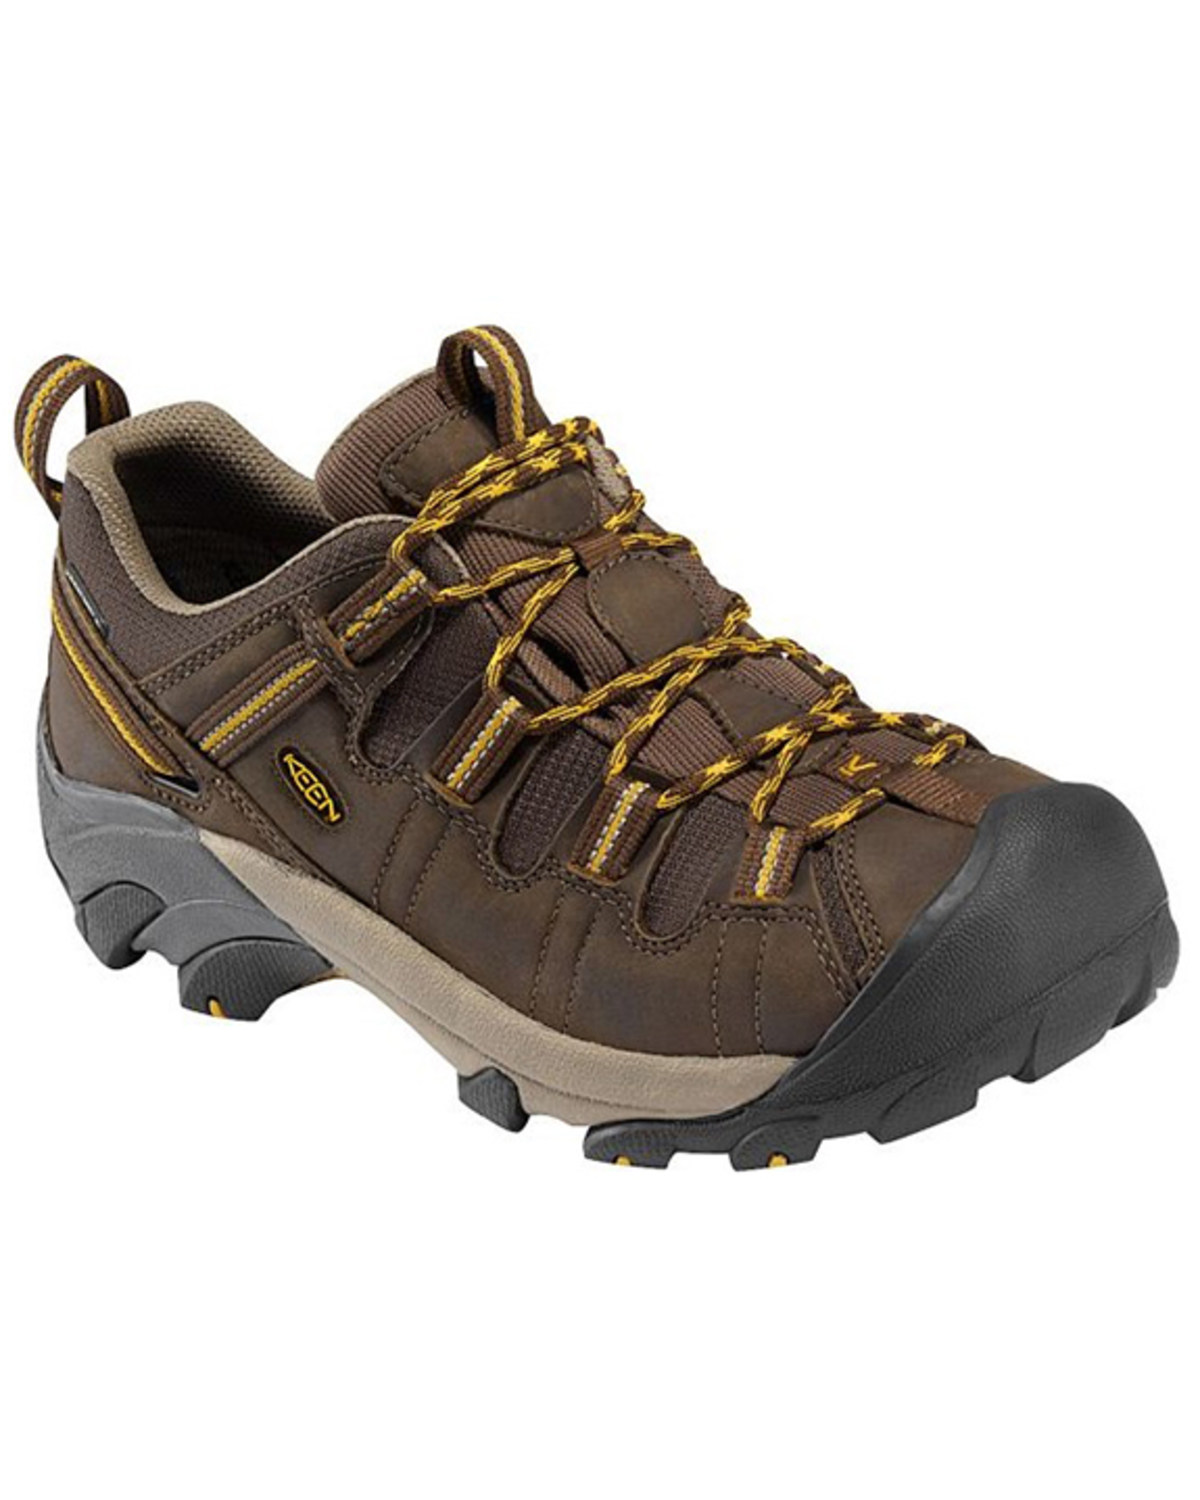 Keen Men's Cascade Targhee II Waterproof Lace-Up Wide Hiking Boots - Soft Toe